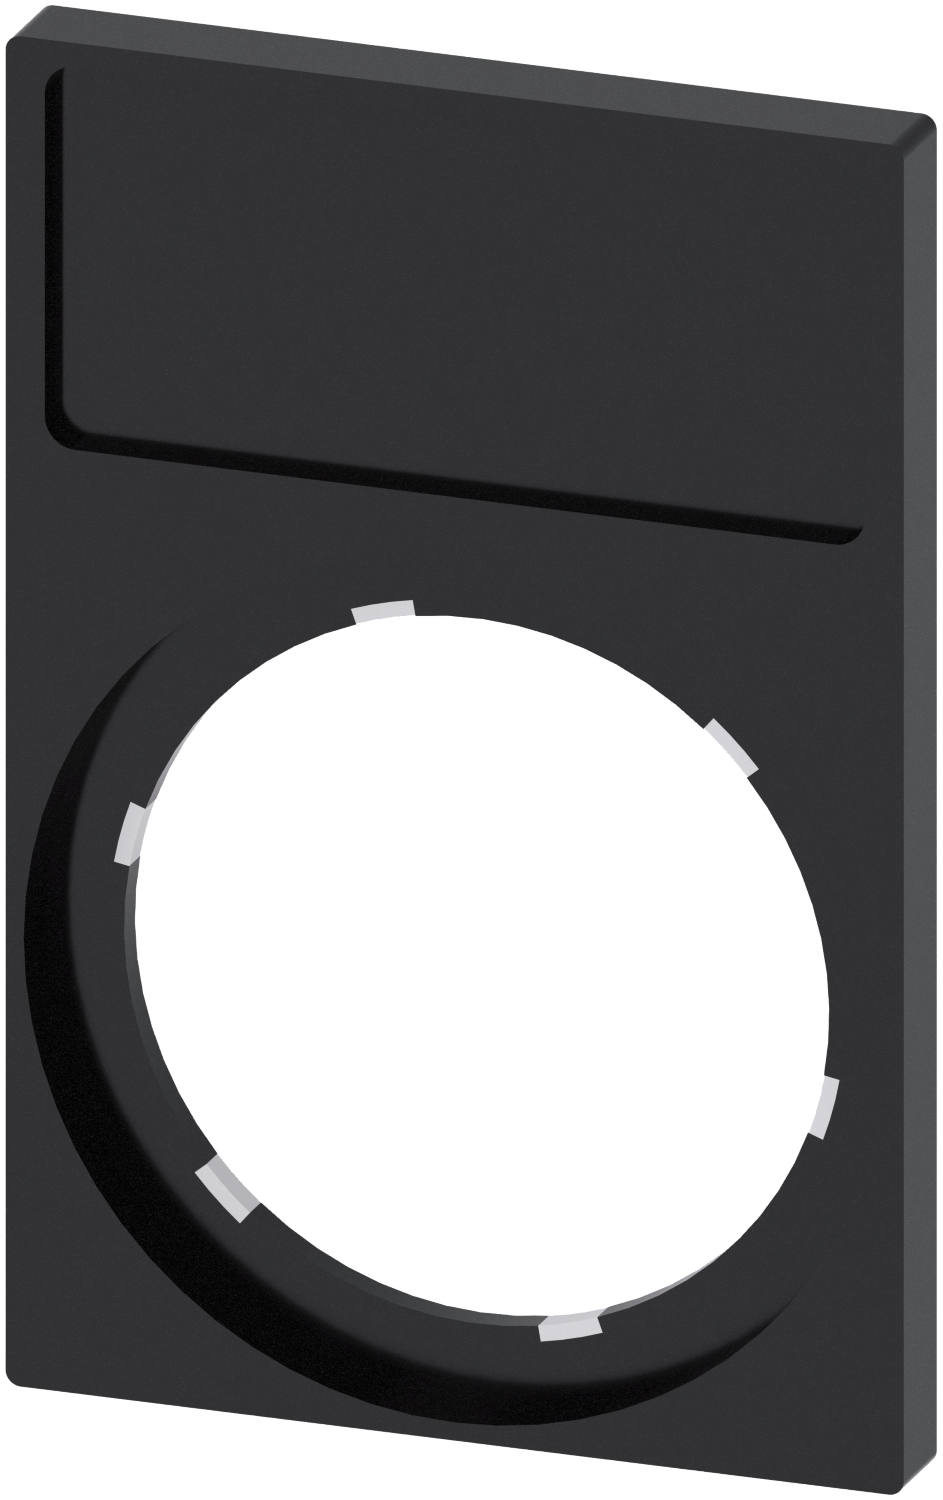  Porte-étiquette, 22mm, Cadre anguleux en bas, noir, pour plaquette de repérage 12,5 mm x 27 mm, à coller 